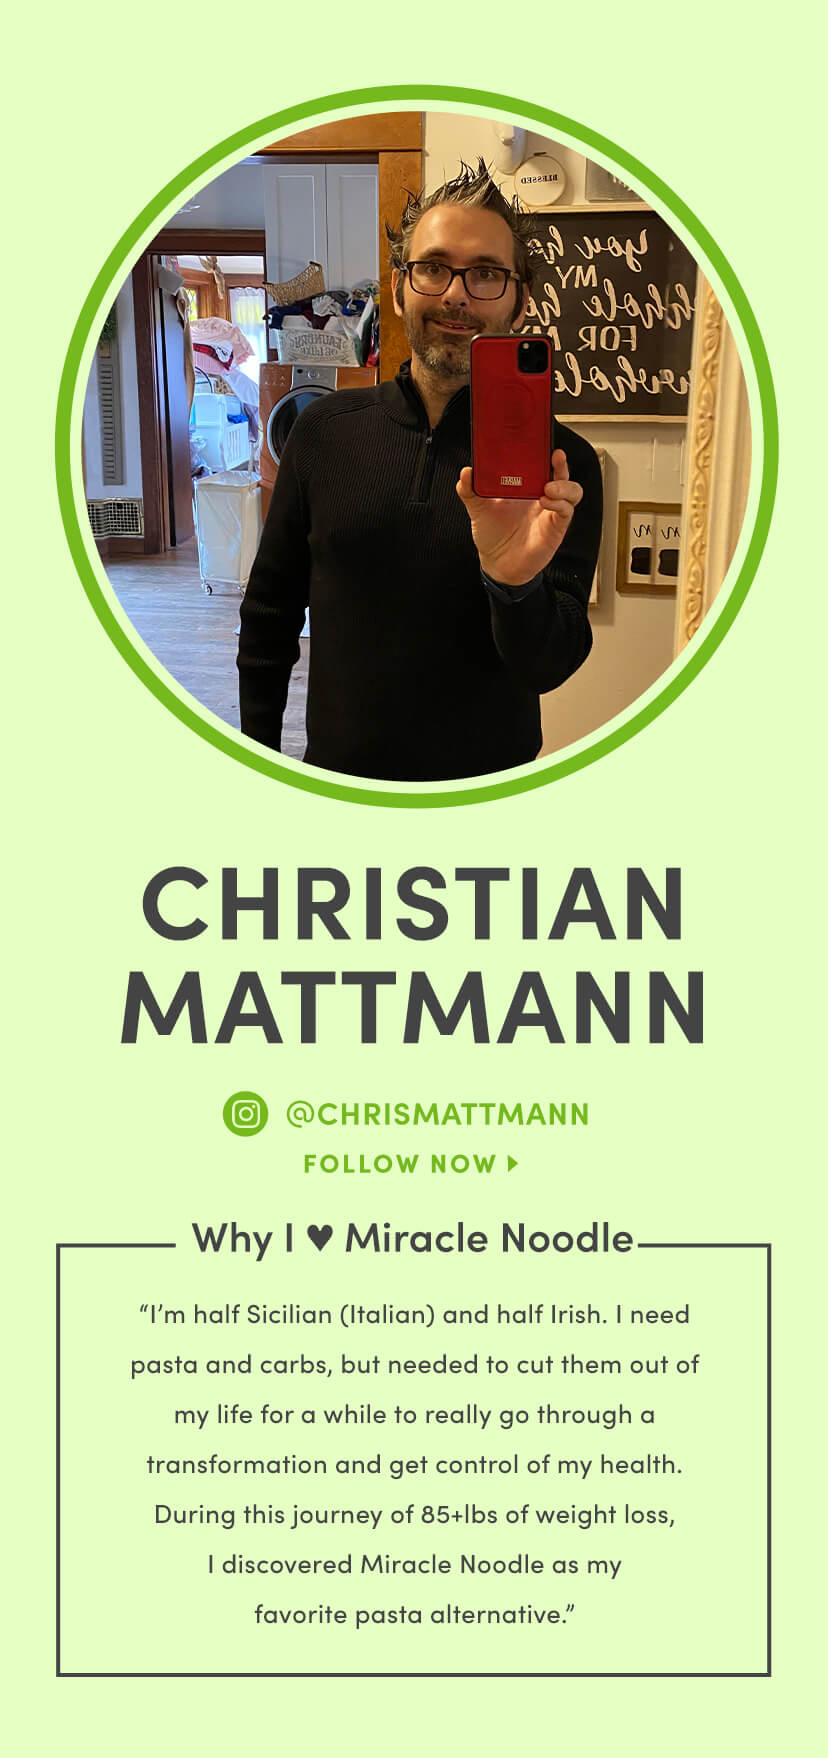 CHRISTIAN MATTMANN - FOLLOW NOW